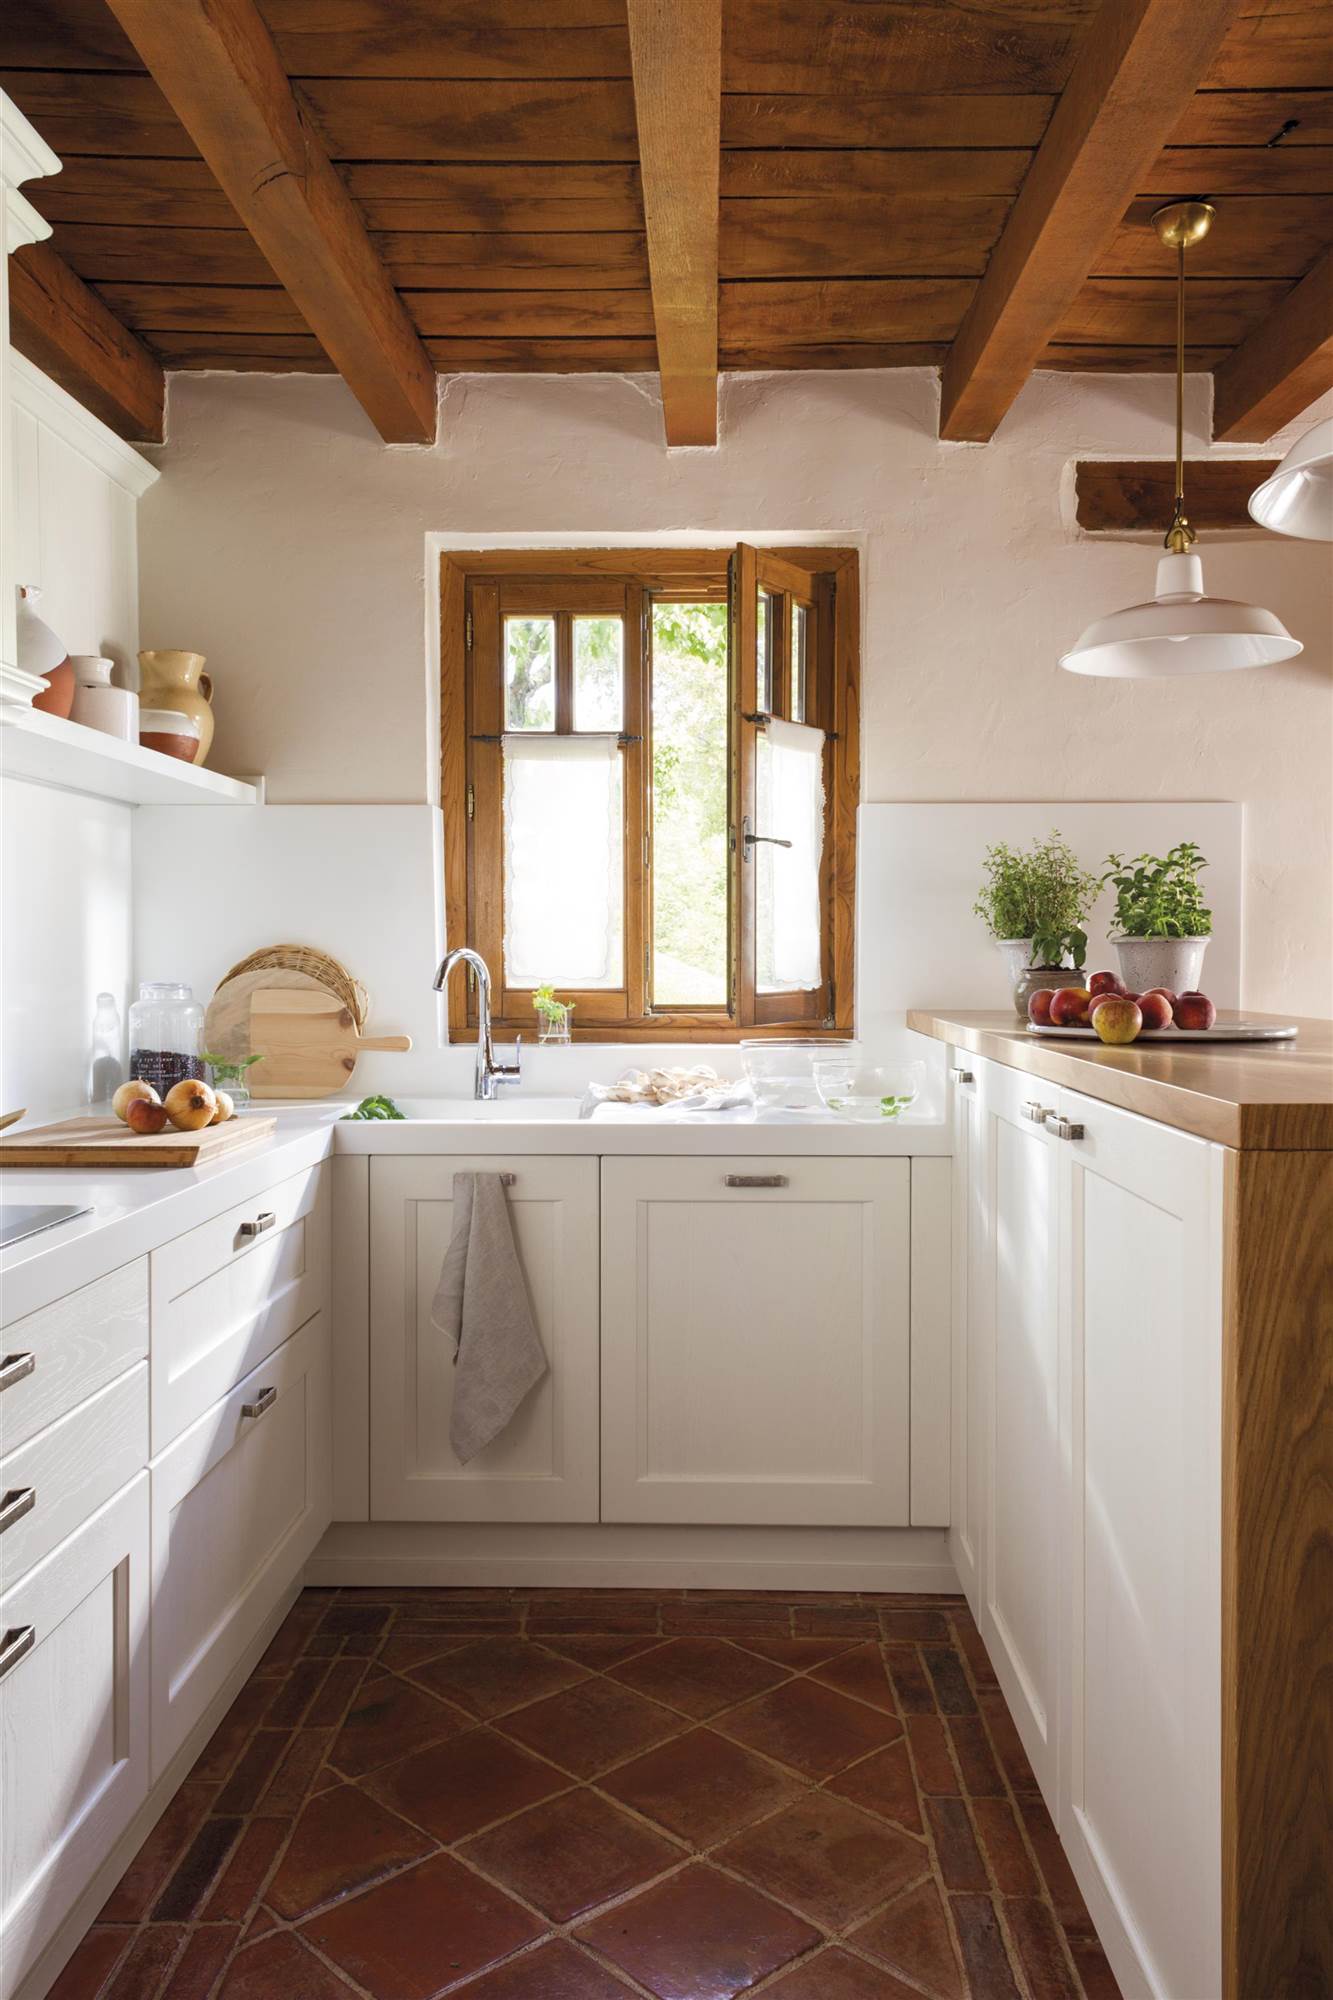 Cocina rústica blanca con vigas y ventanas de madera.